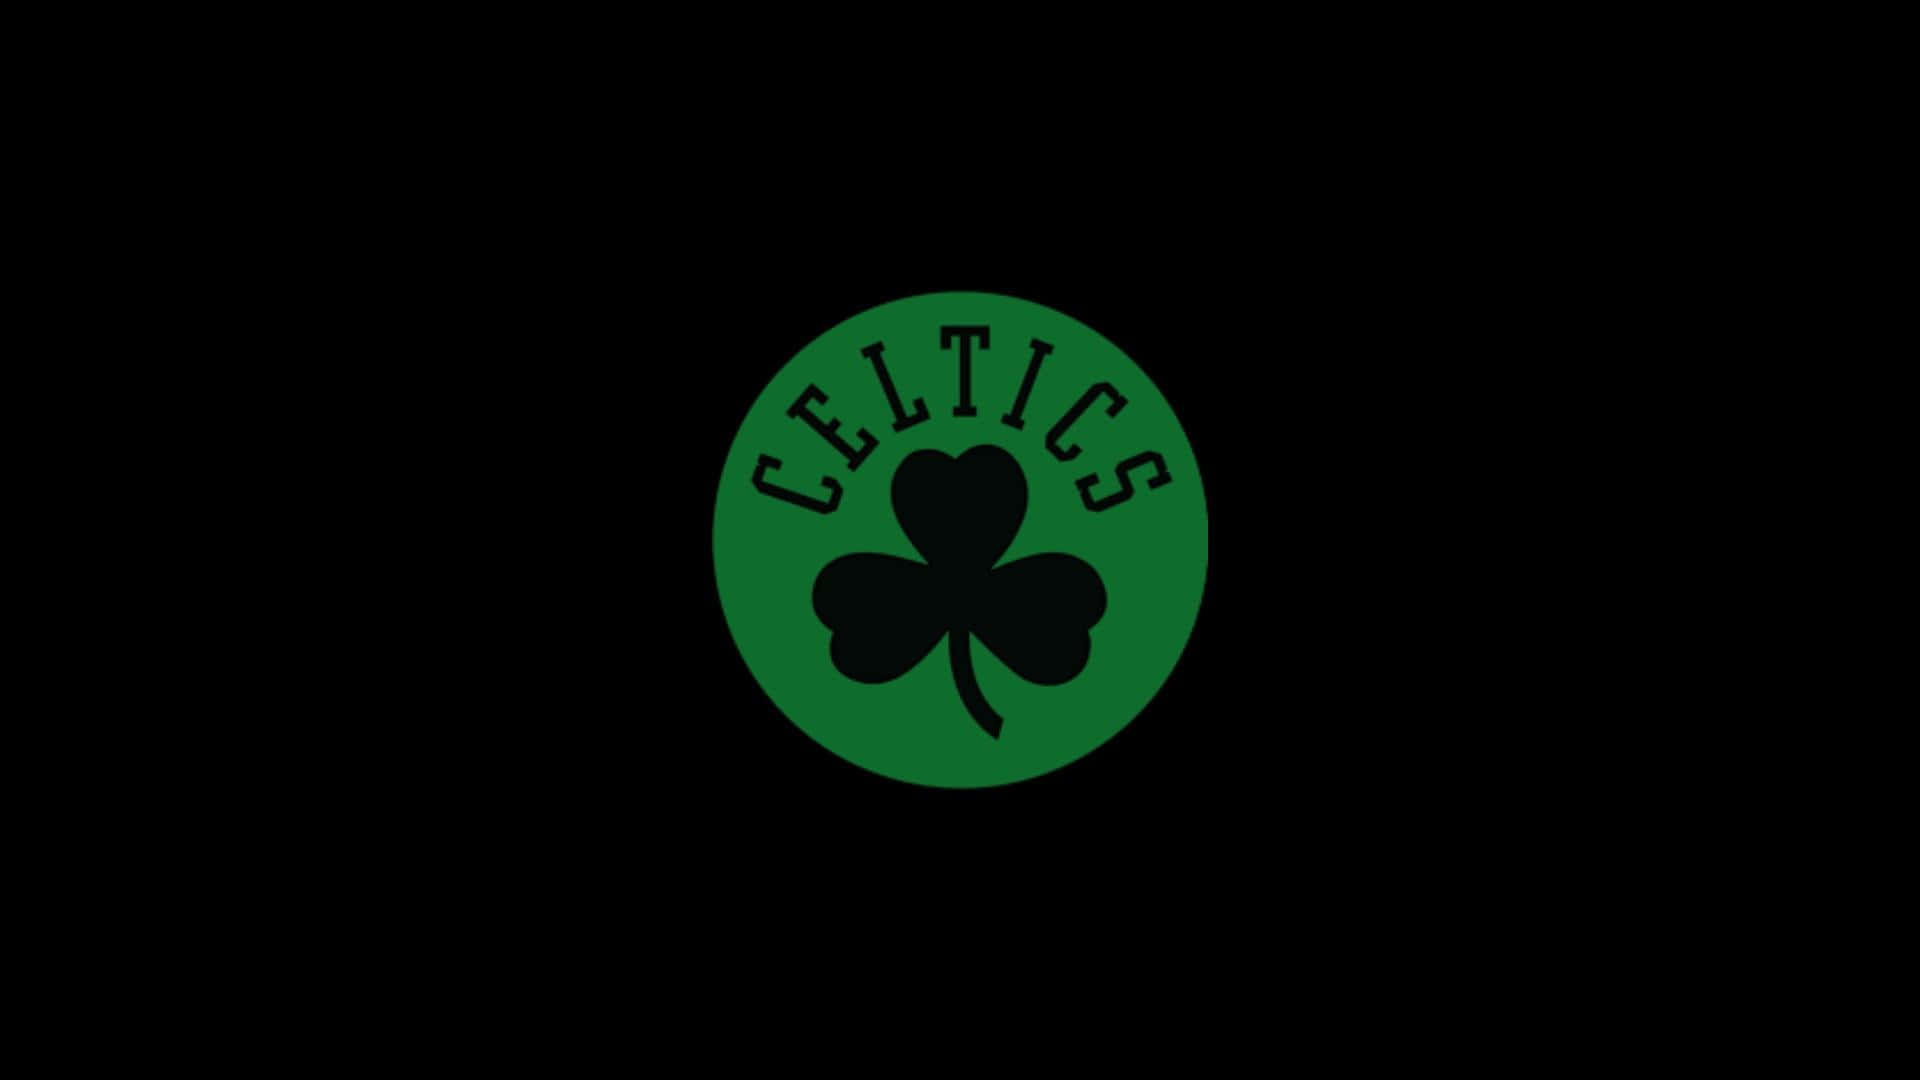 Logotipoclássico Do Celtics. Papel de Parede